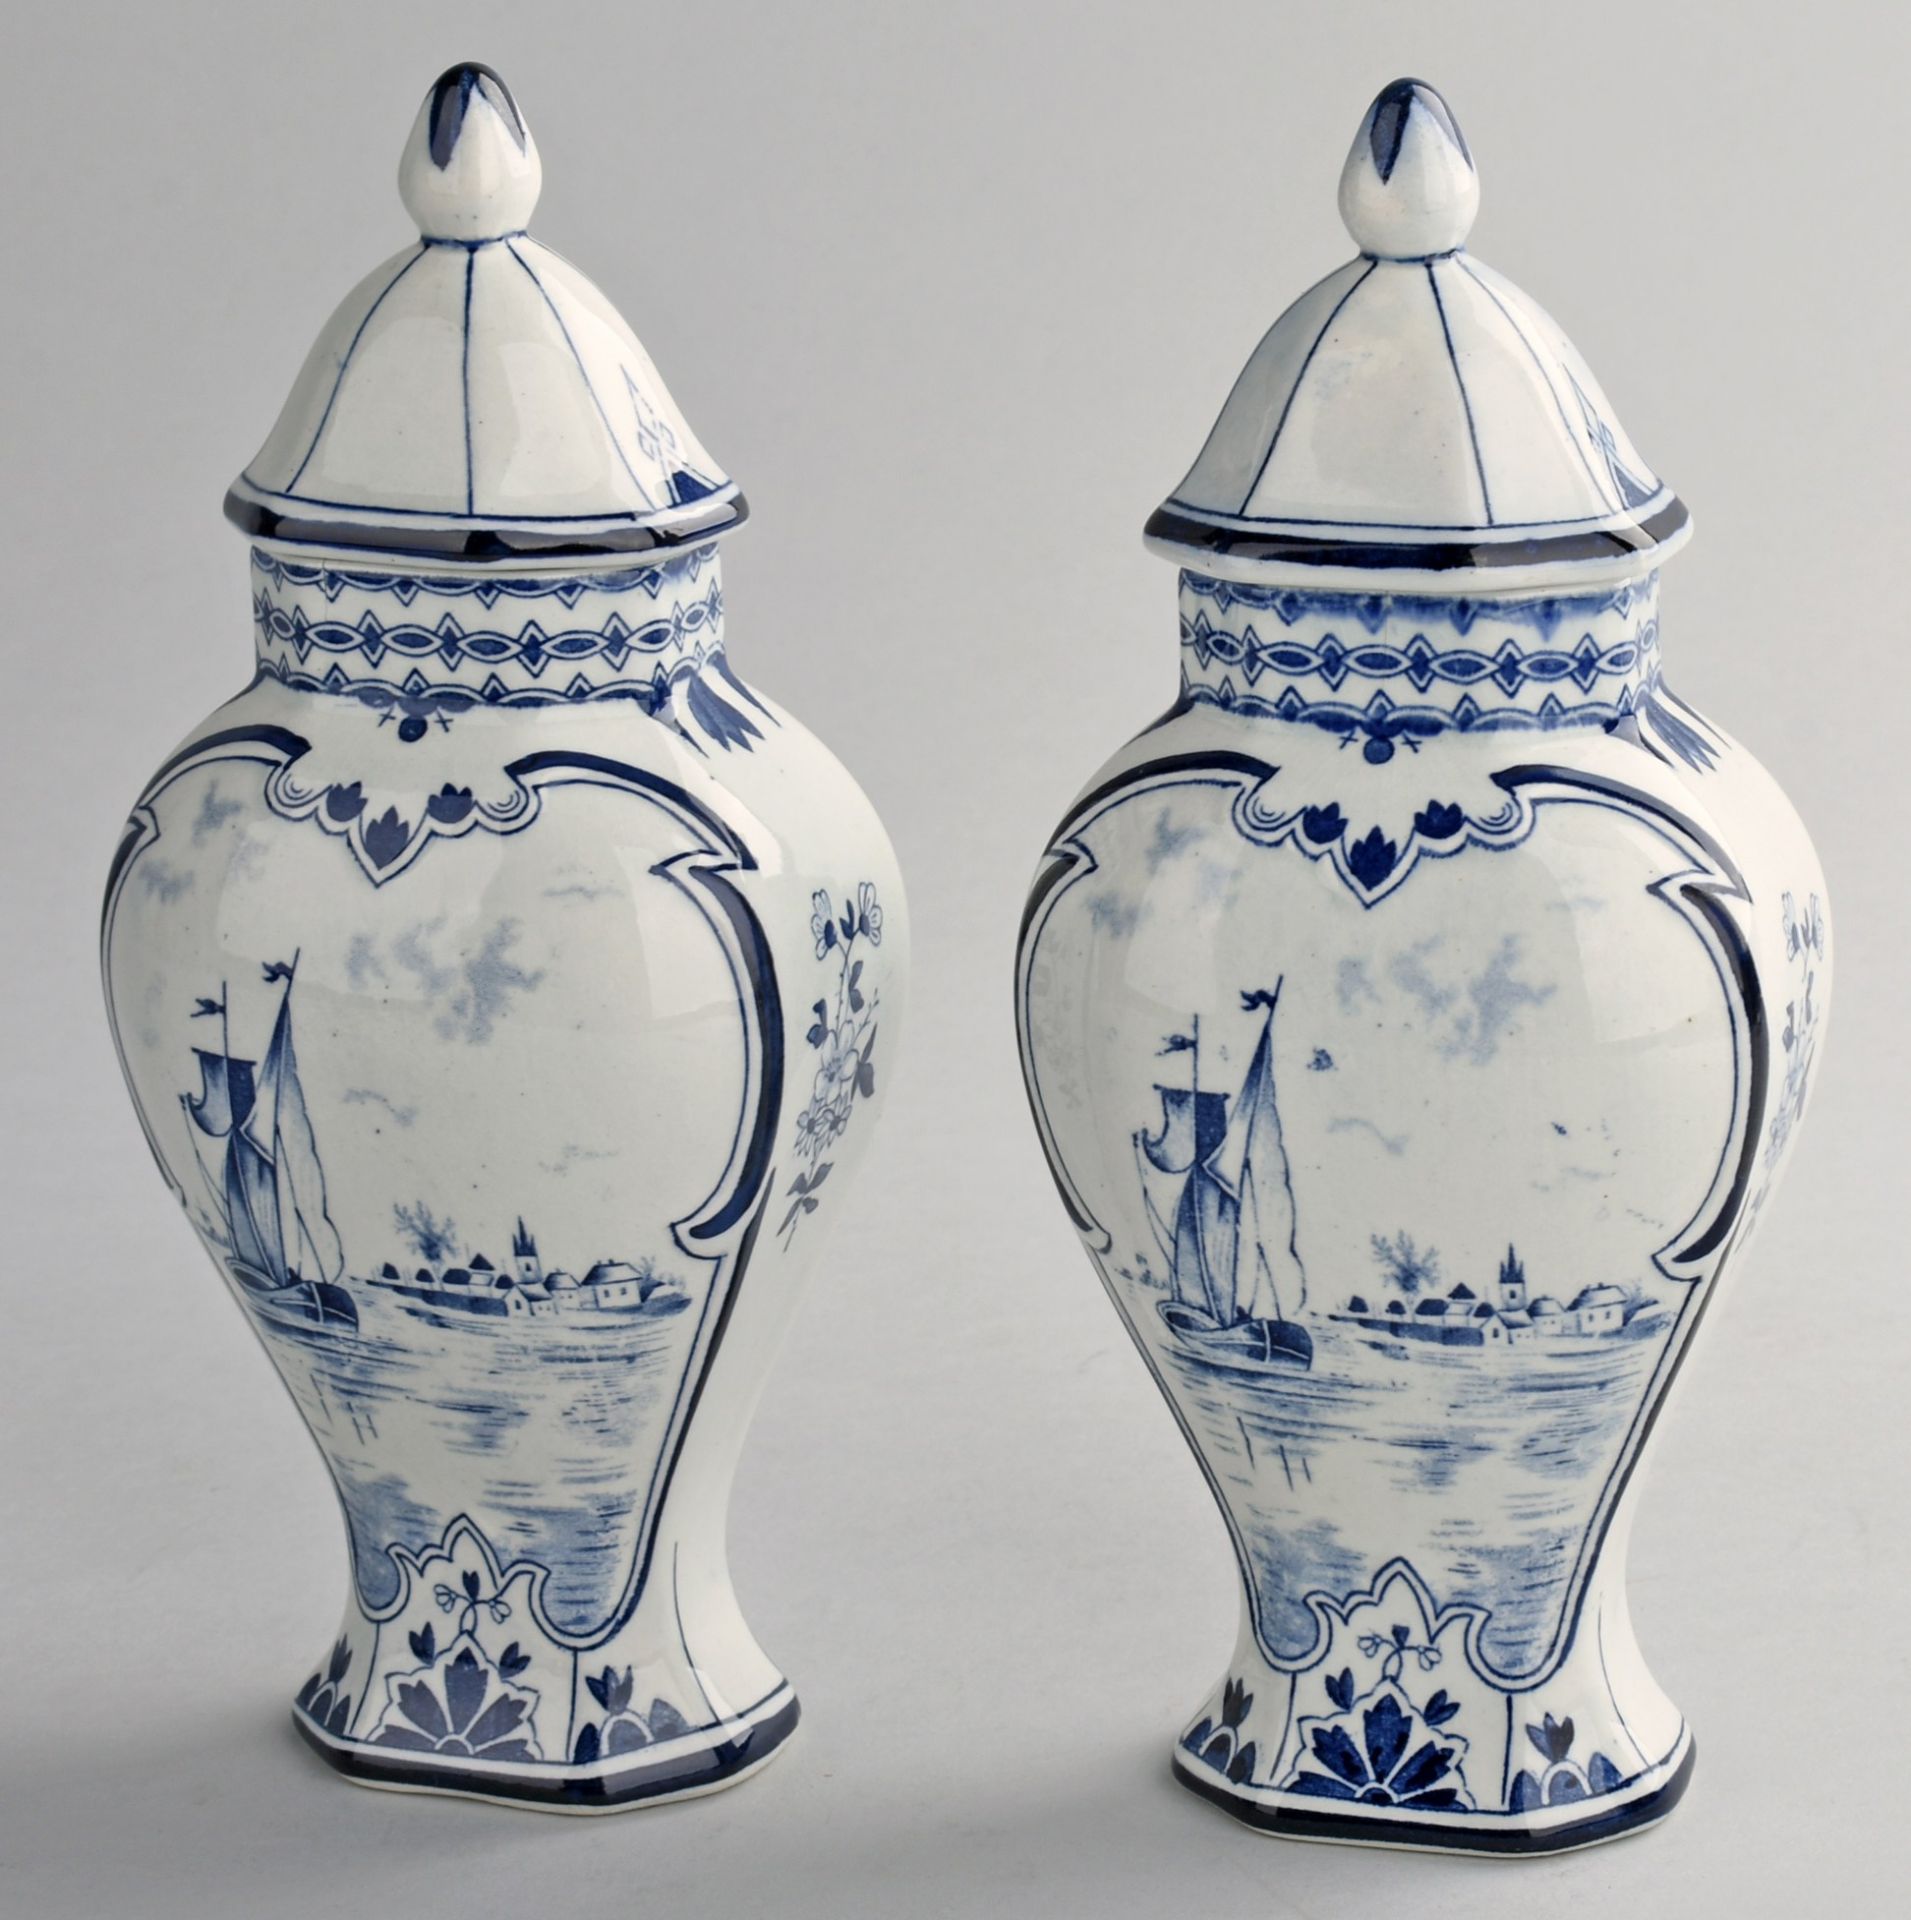 Paar Deckelvasen Delft (Stempelmarke), Fayence, über ausgestelltem Stand zur Schulter hin - Bild 2 aus 3